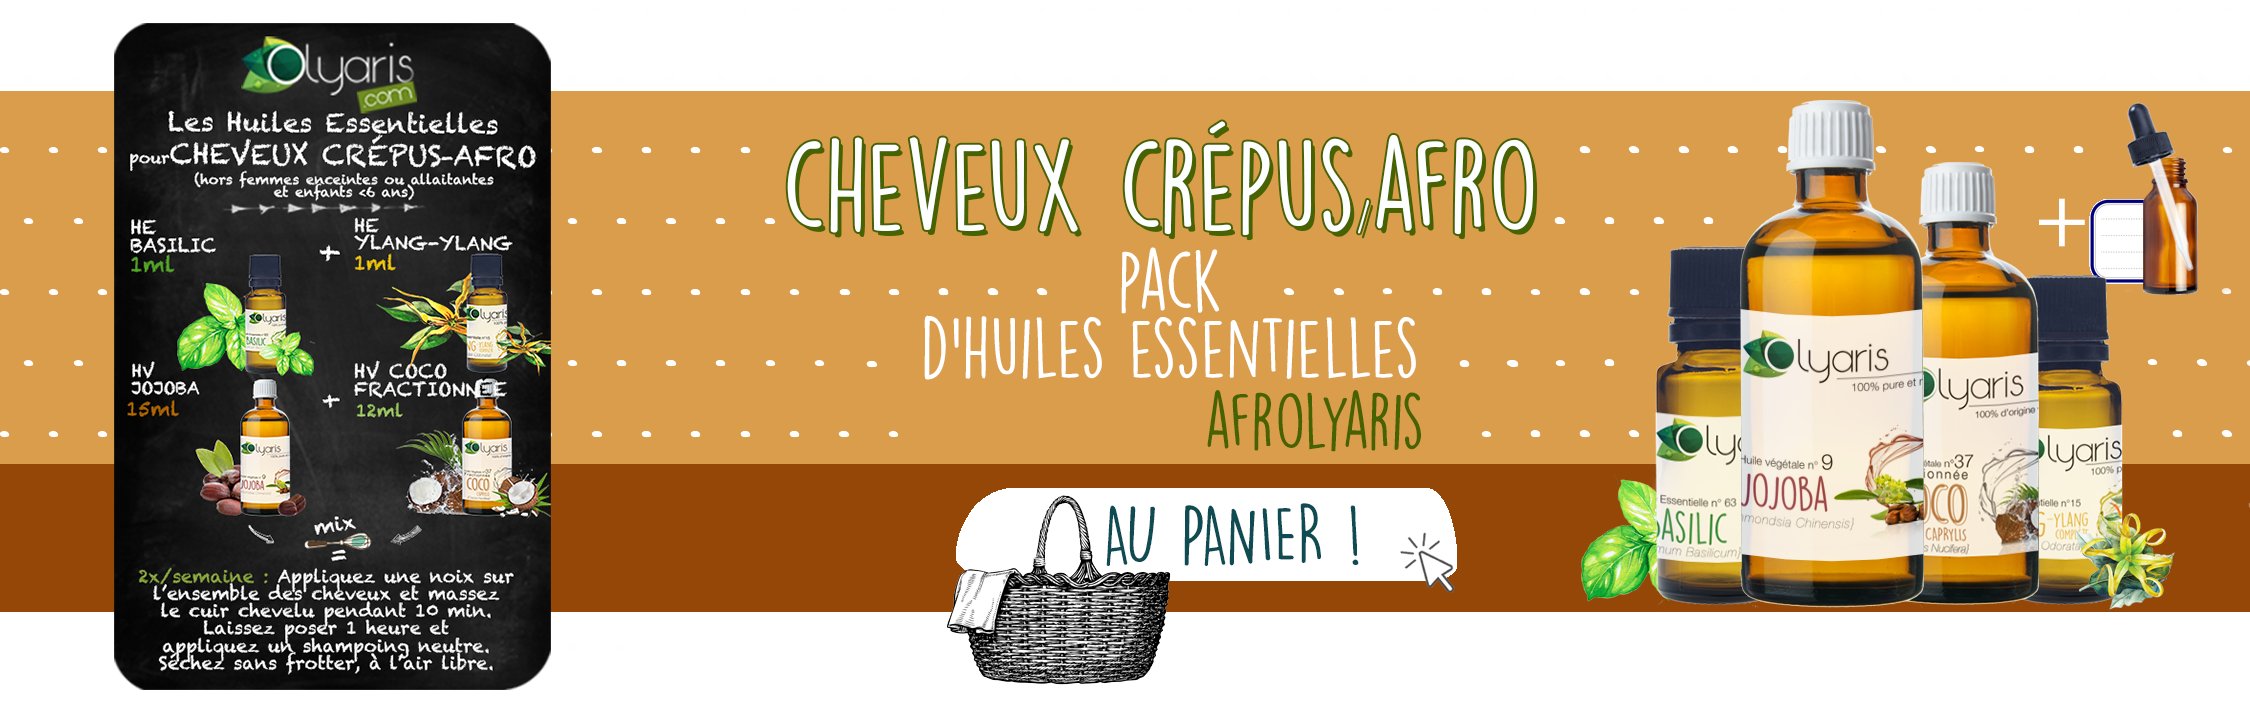 Cheveux Crépus et Afro : Les Huiles Essentielles à Utiliser - Olyaris